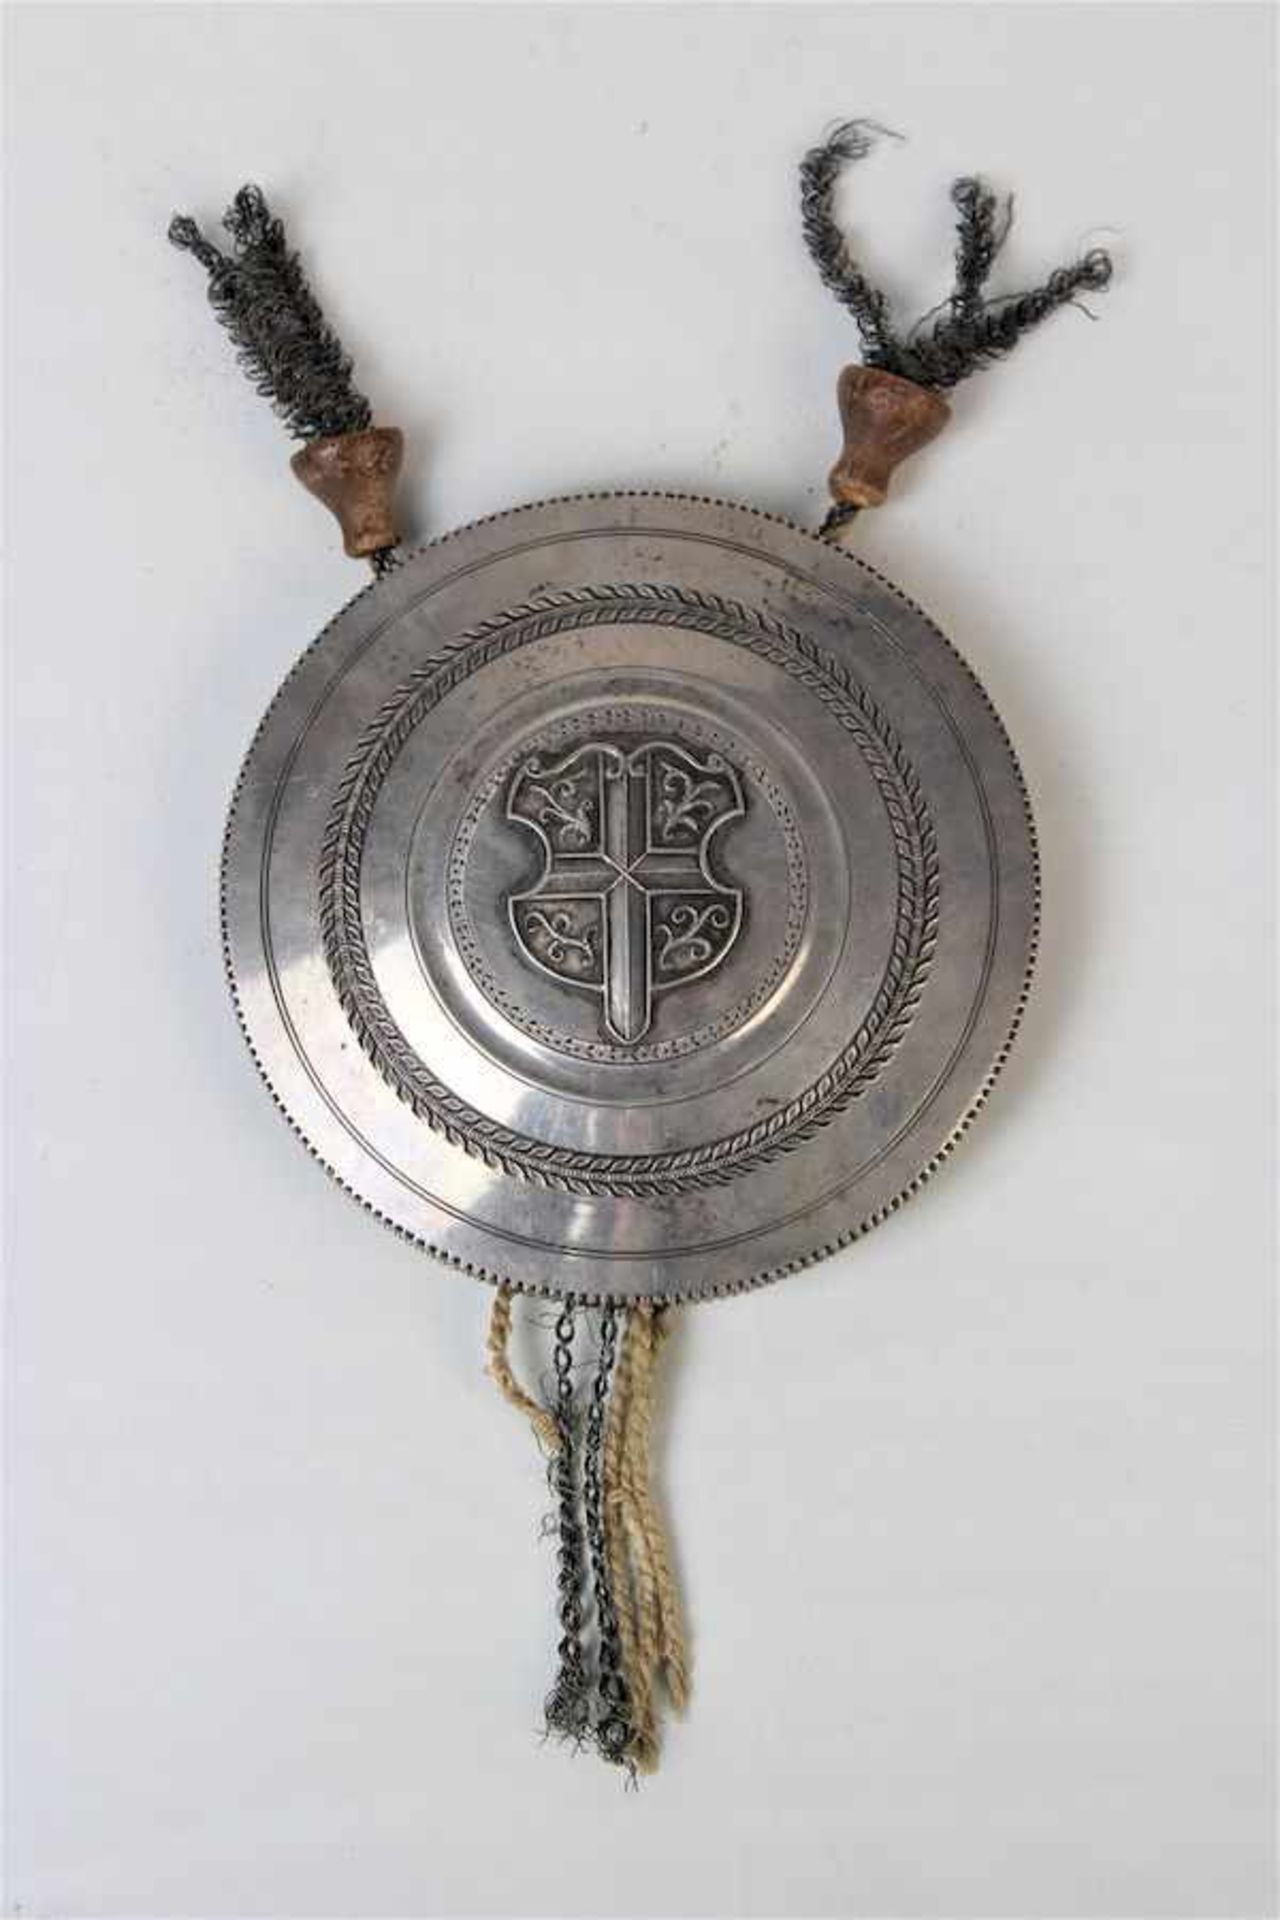 Siegelbehältnis in Silber, innen liegend das Siegel der Stadt " Friburg "13-lötiges Silber